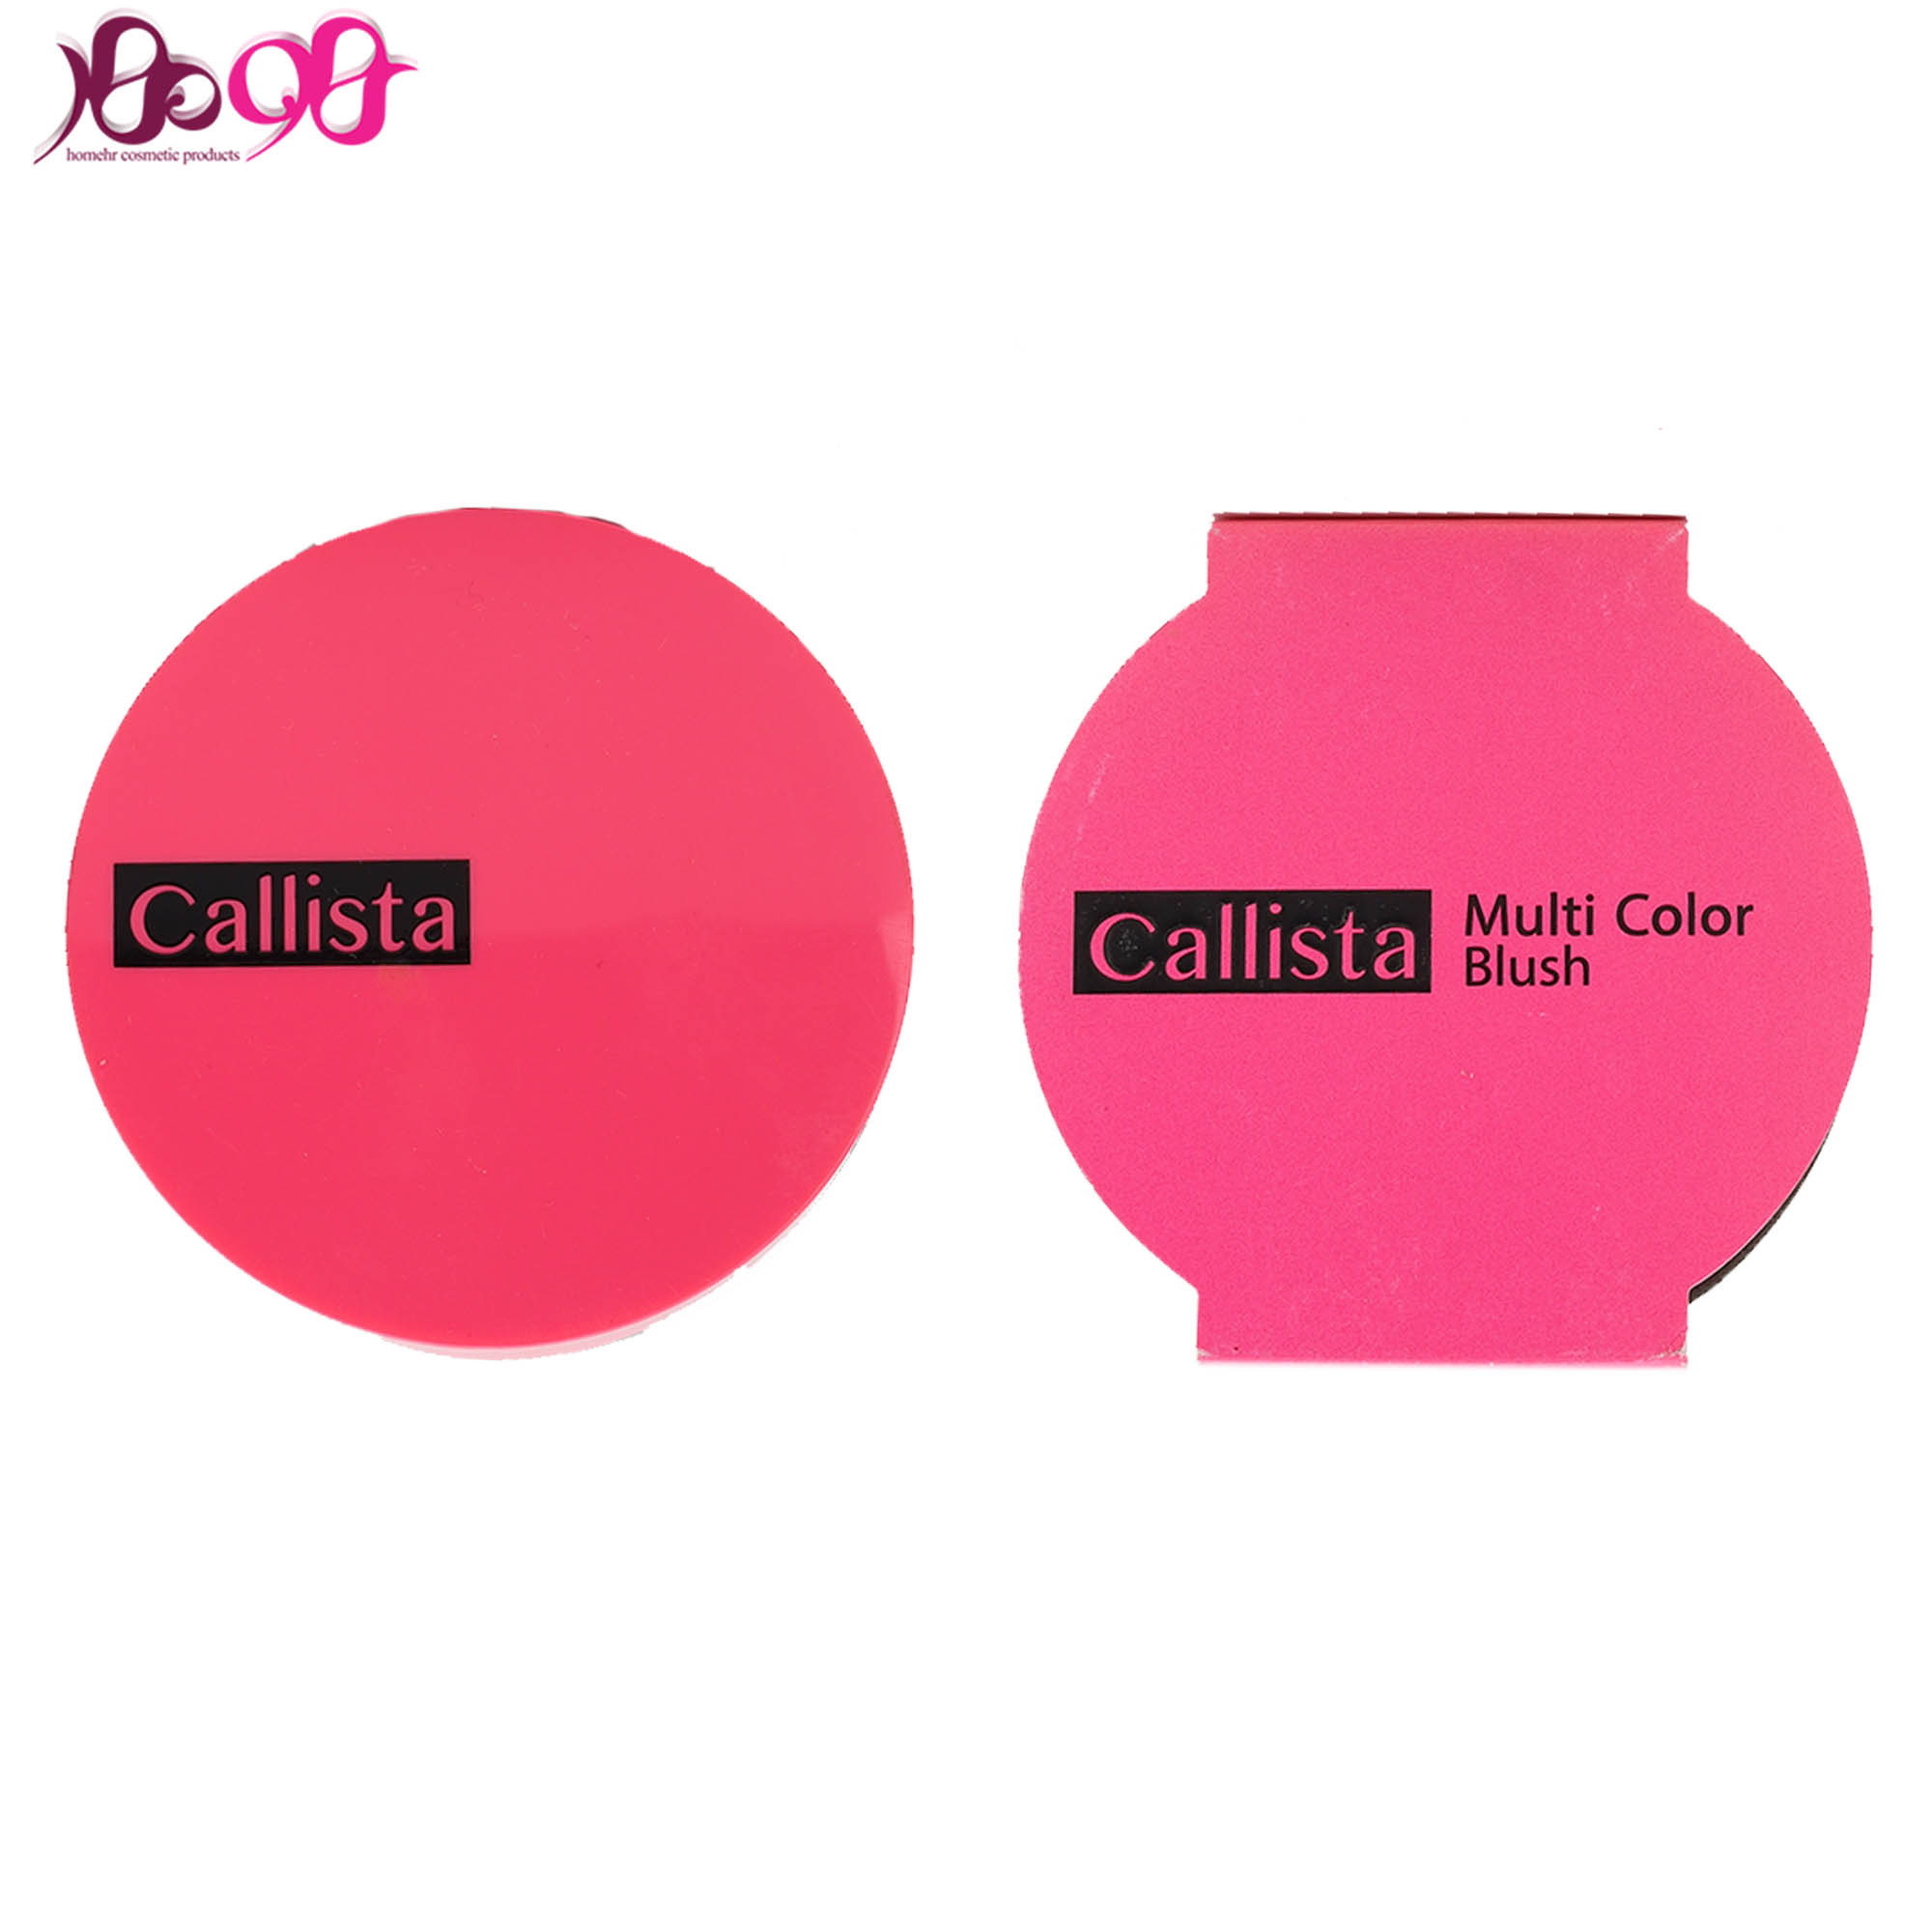 رژگونه-کالیستا-سری-multi-color-blush-شماره-calista-b23